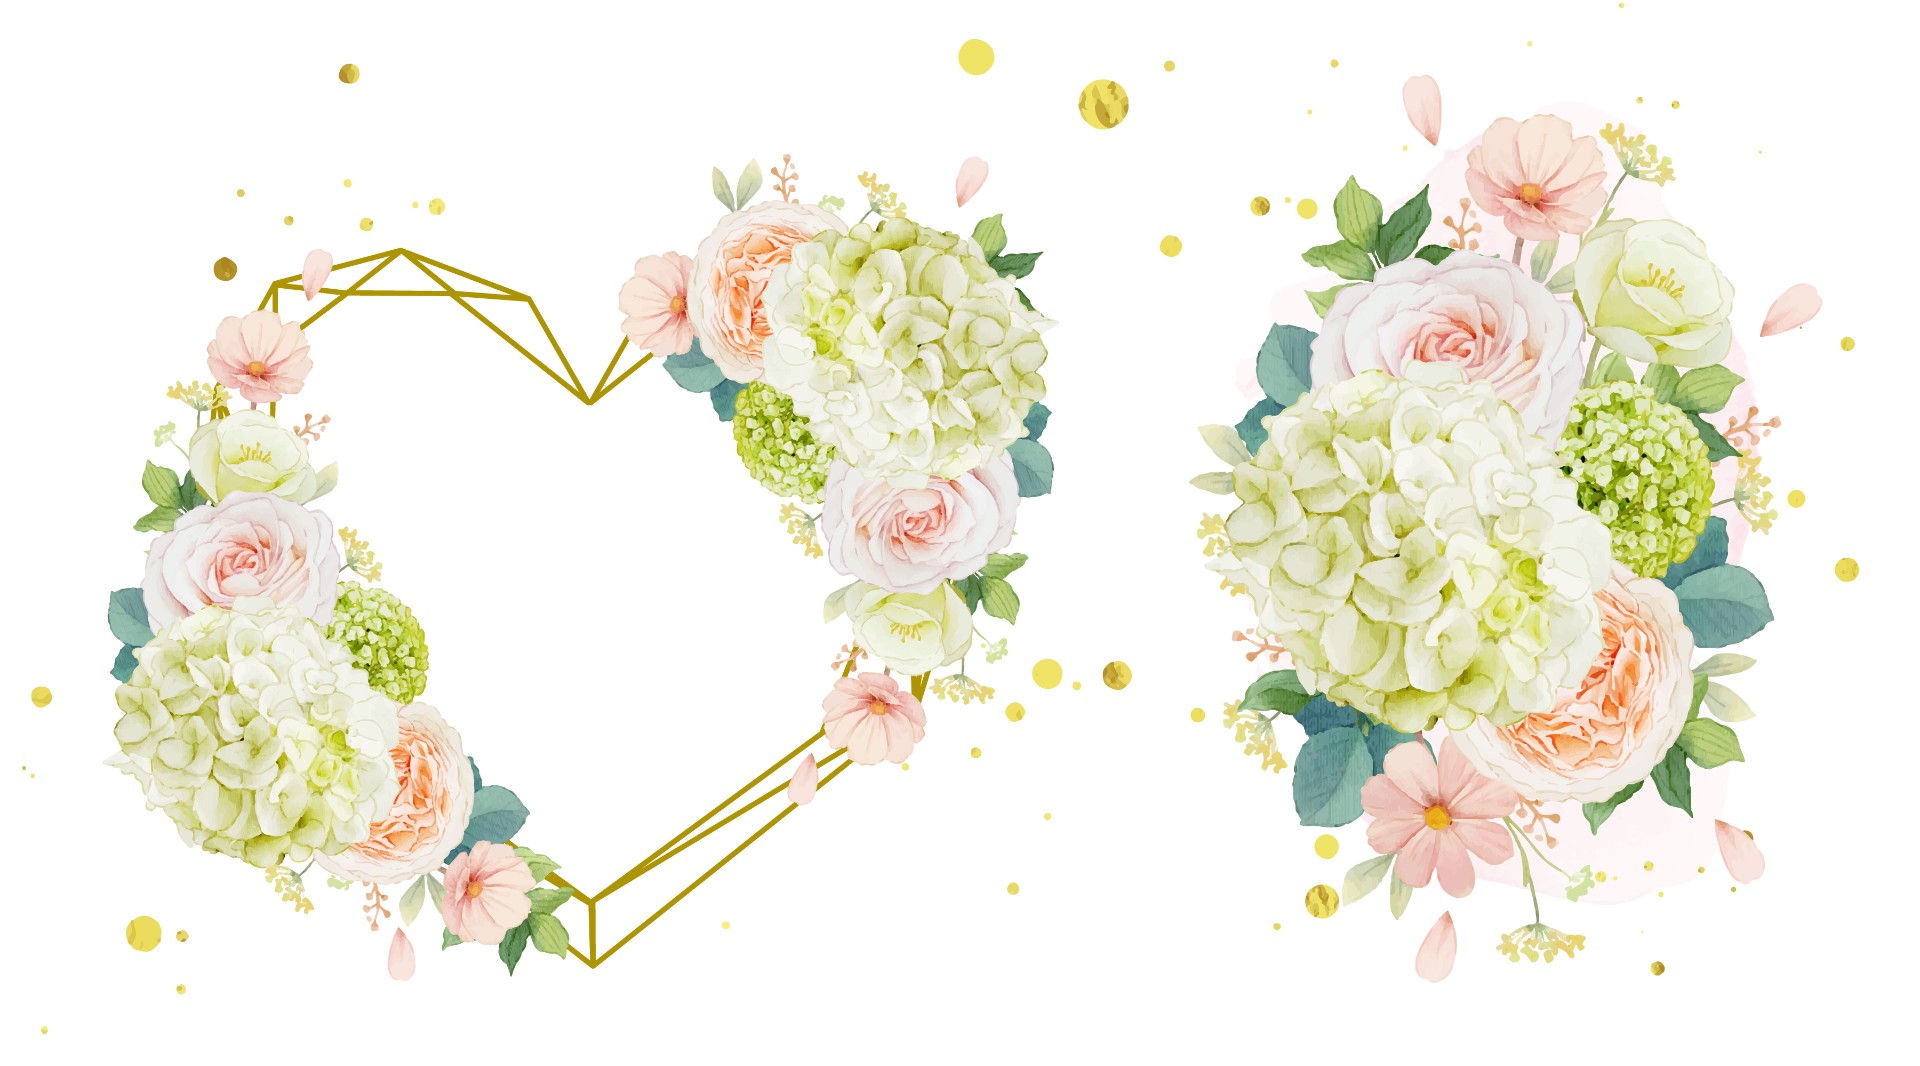 雏菊玫瑰和绣球花框架插图0